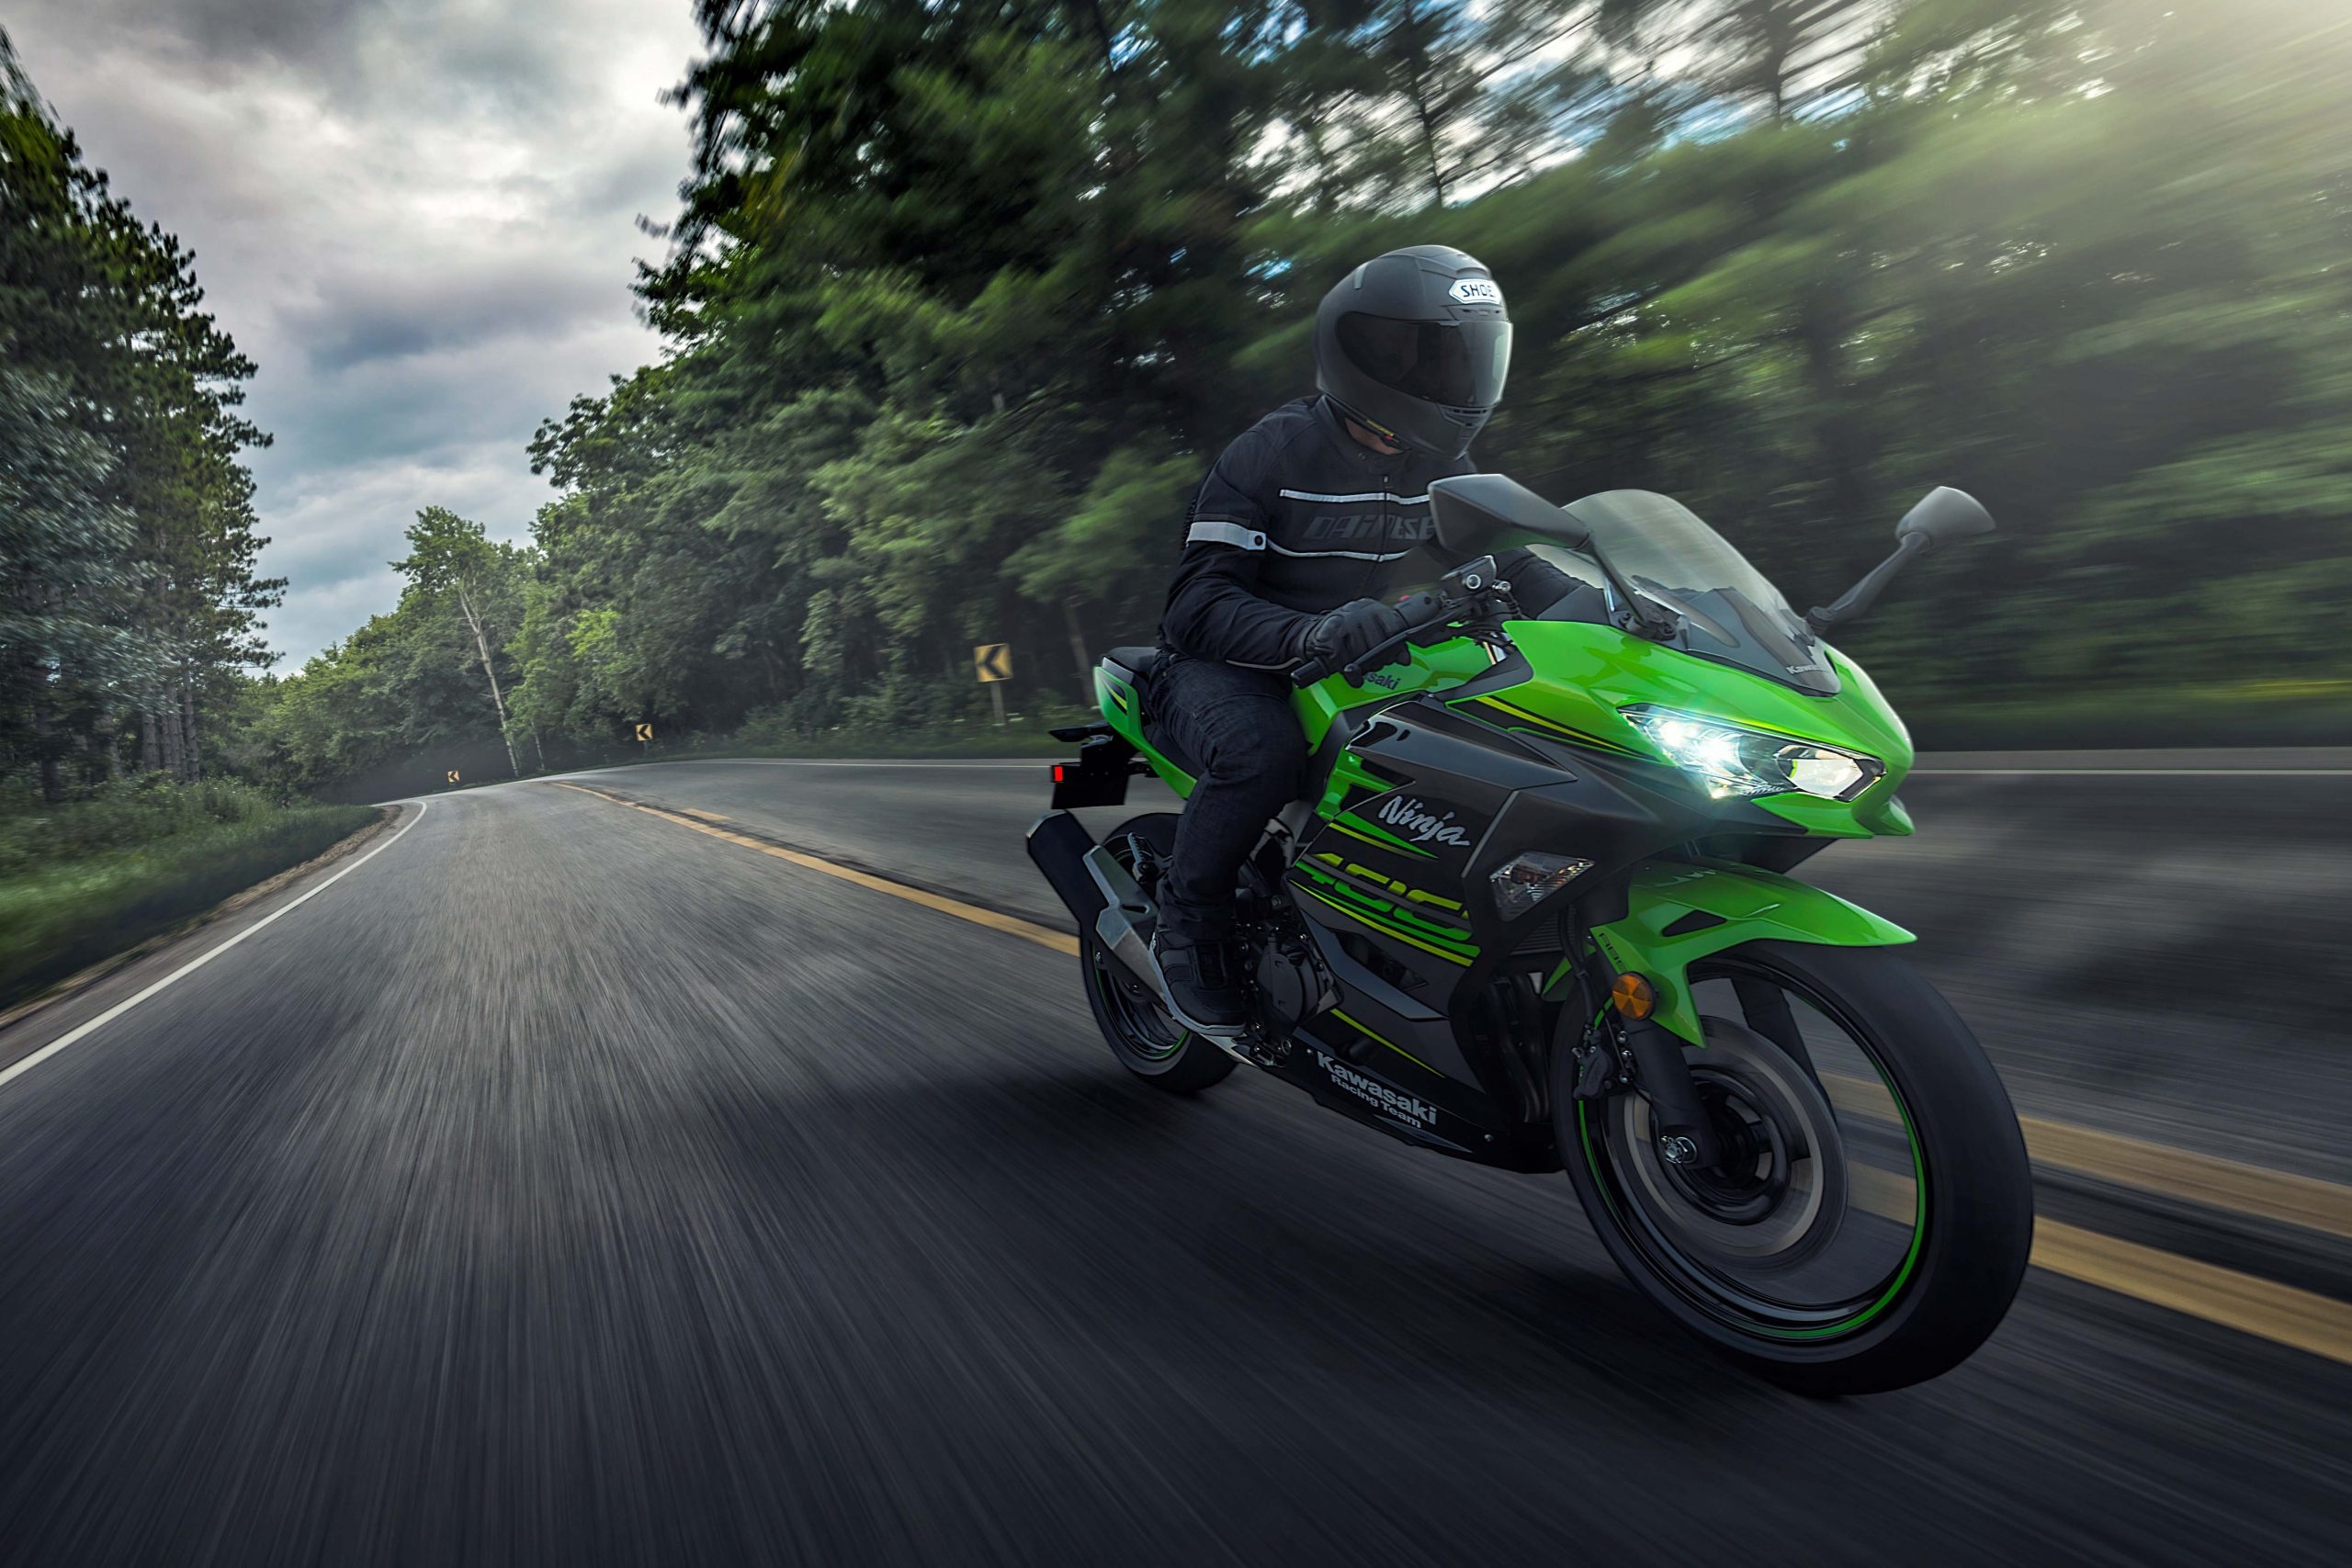 Kawasaki Ninja 400, KTM vs Ninja, Ultimate biking comparison, Dax Street review, 2560x1710 HD Desktop